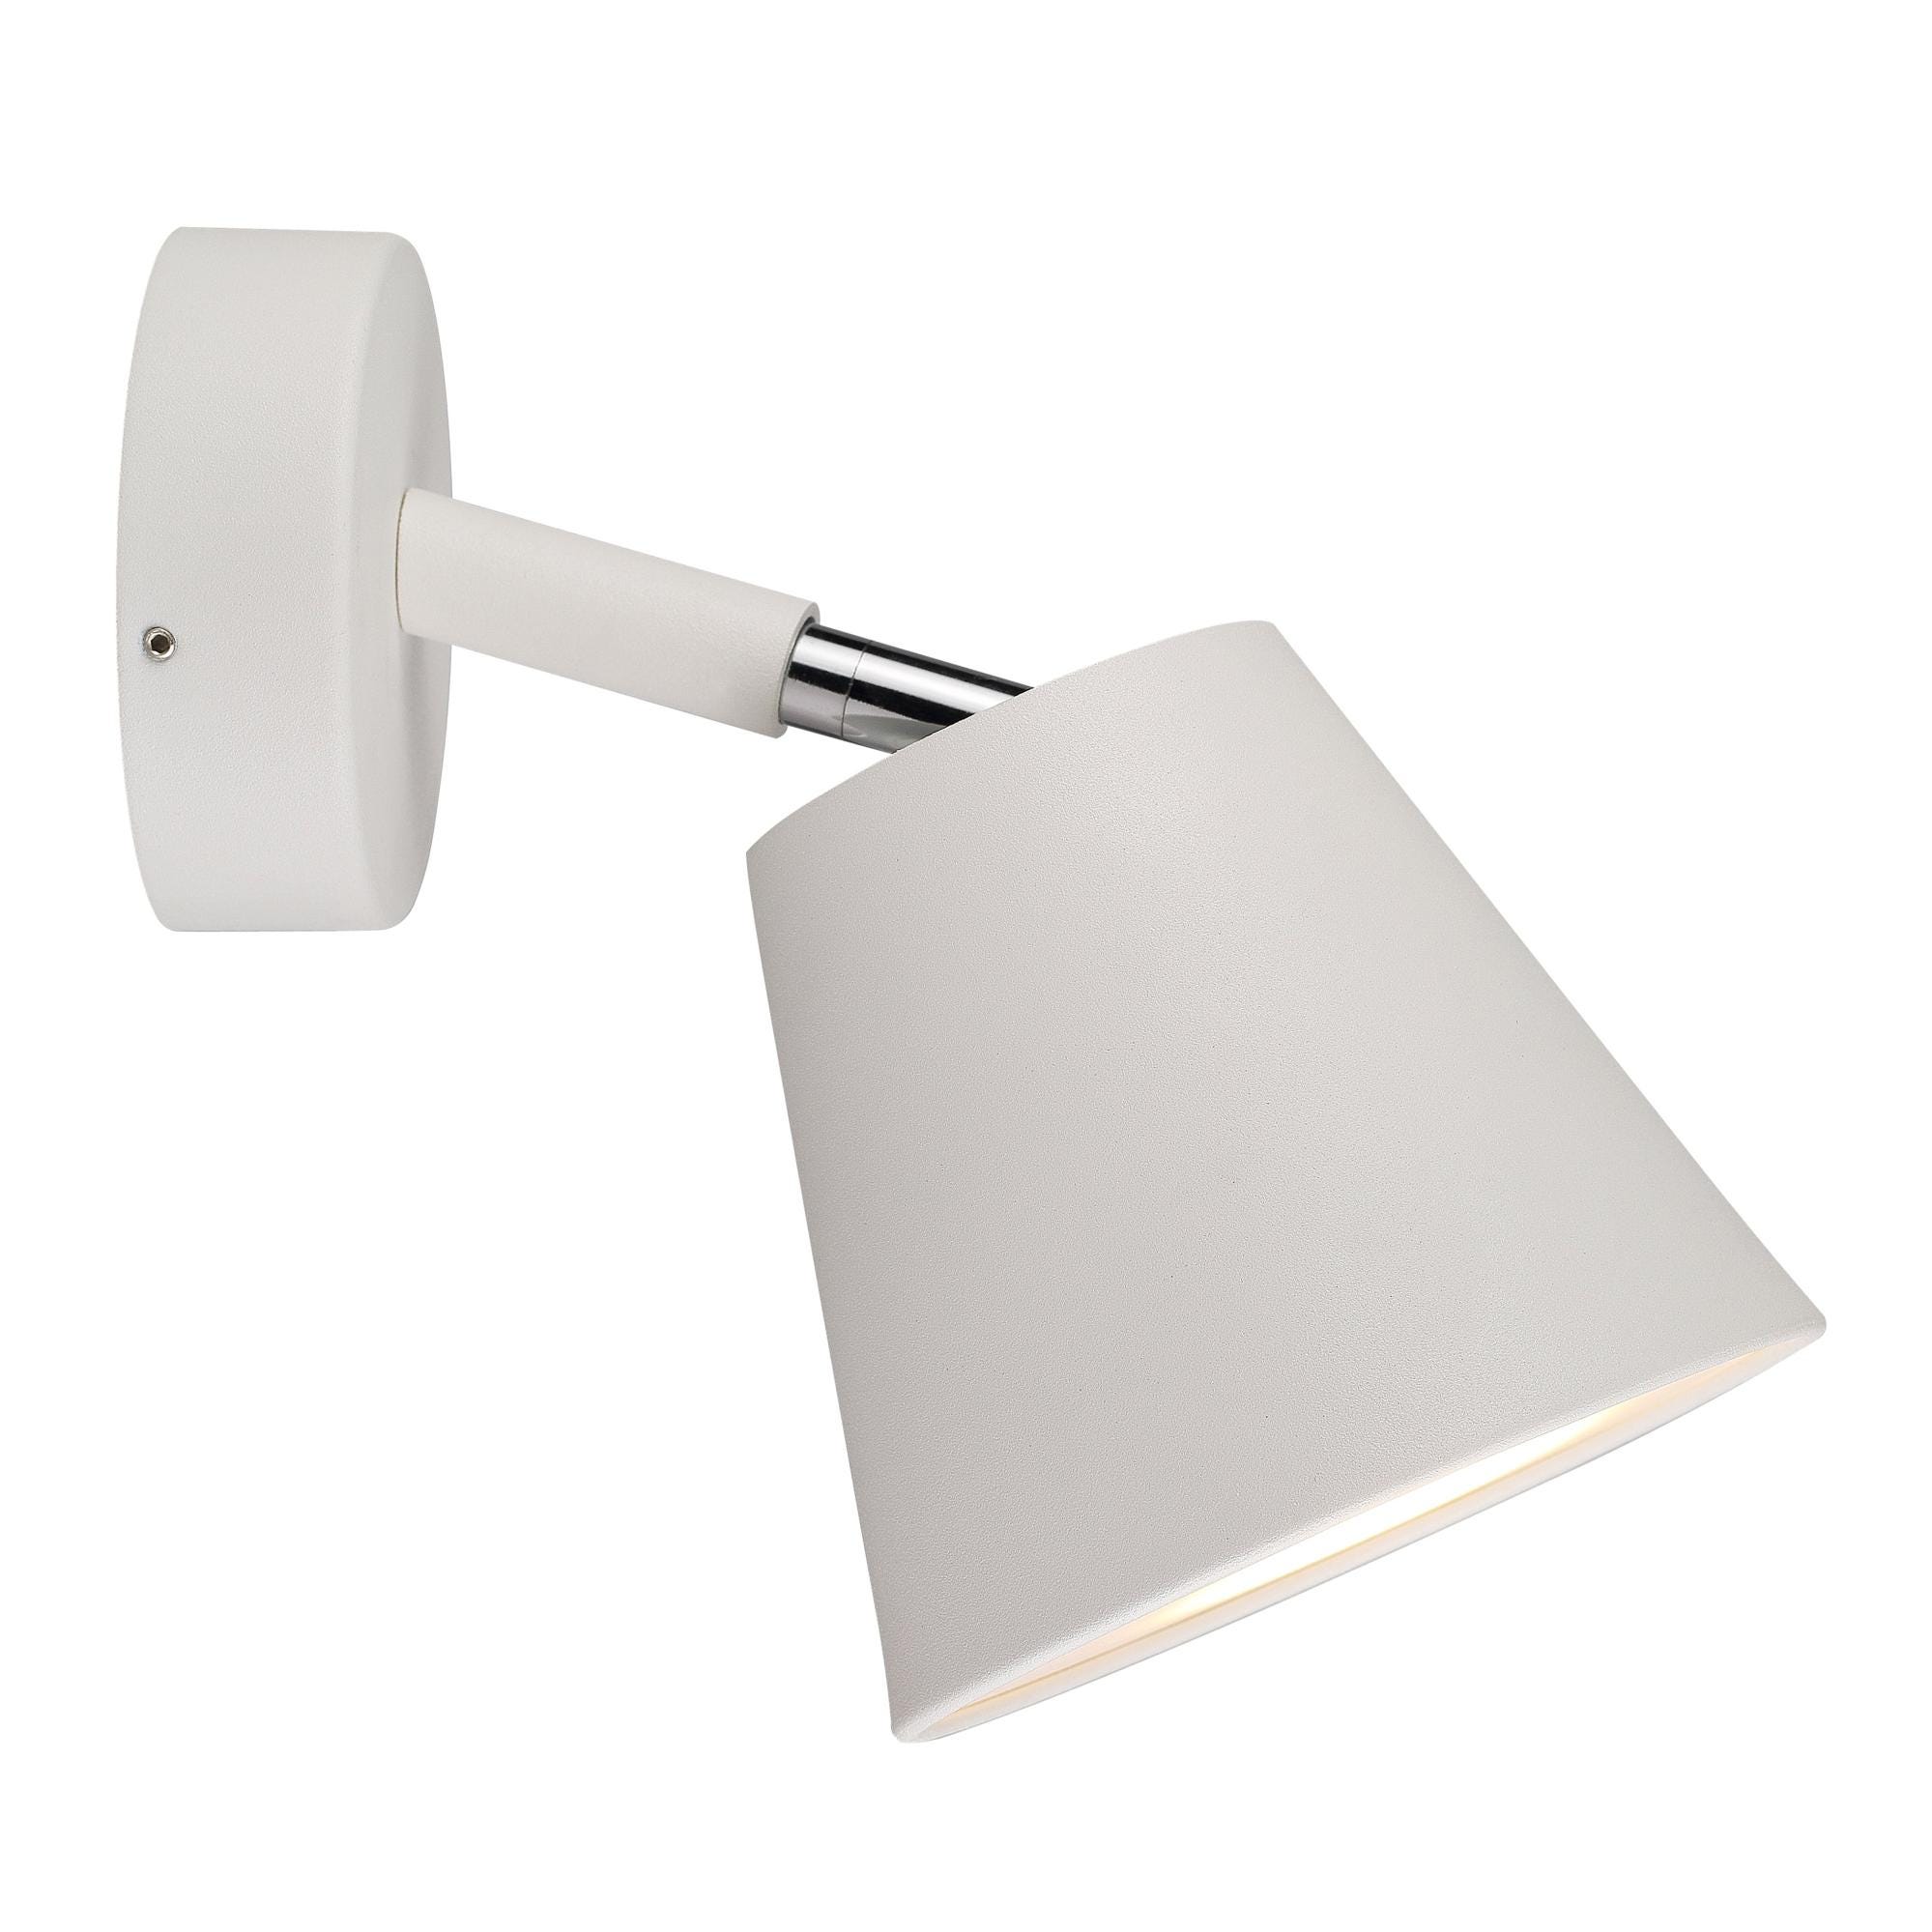 Applique pour salle de bains MAKO blanc mat GU10 400 lumens IP 44 - COREP, 1333004, Ampoule, luminaire et eclairage